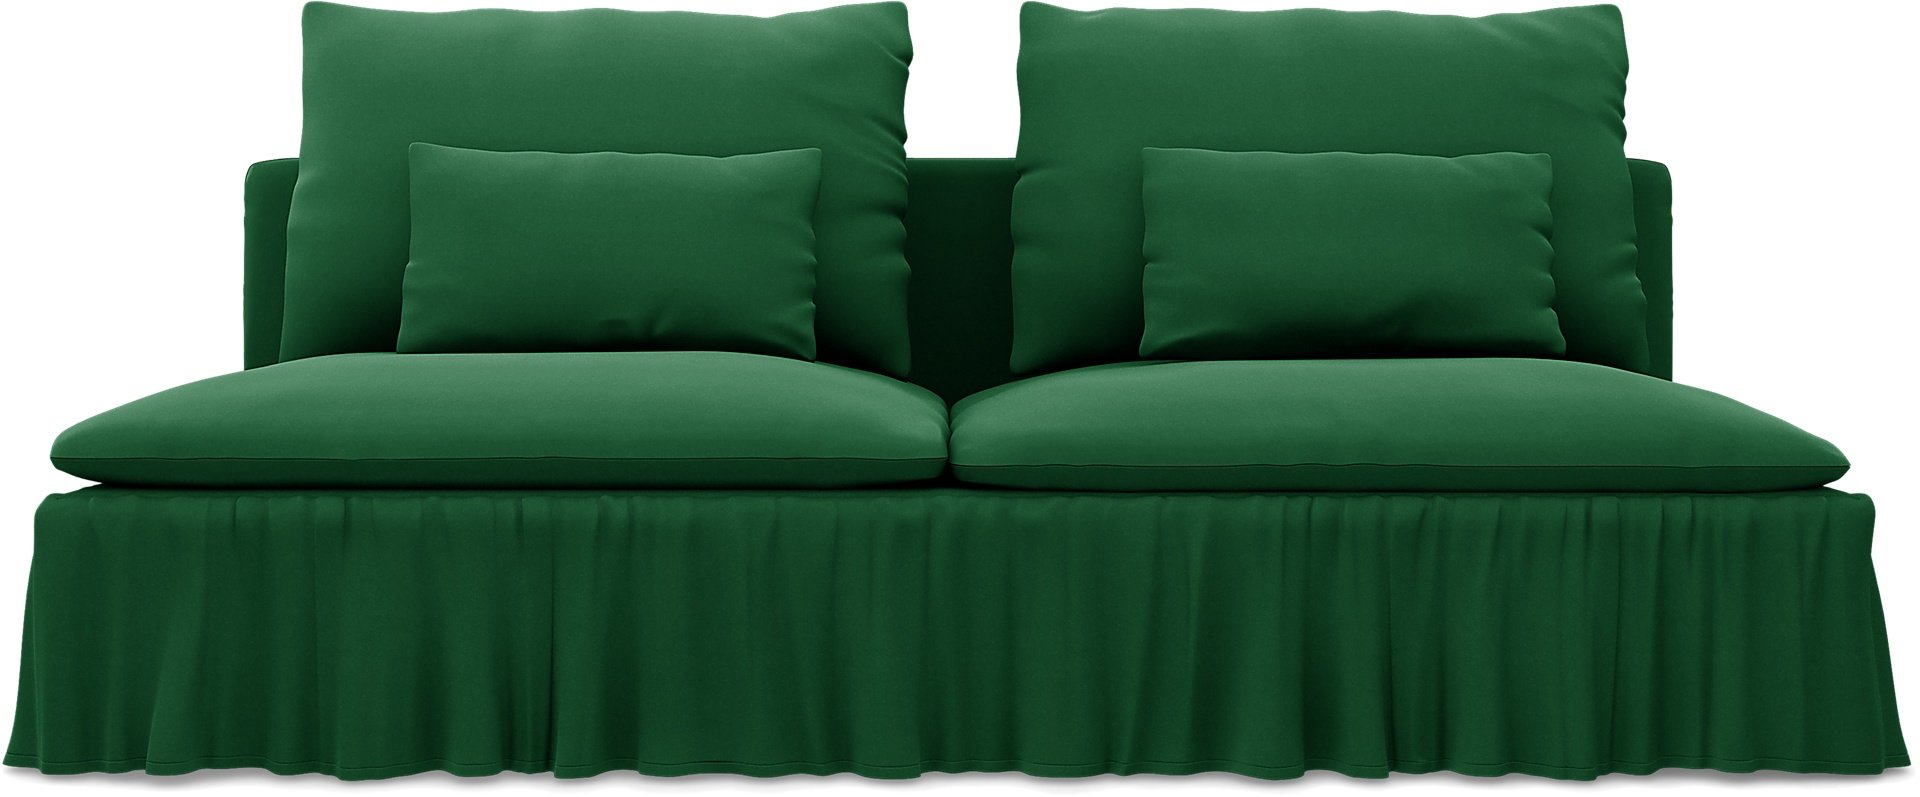 IKEA - Soderhamn 3 Seater Section Cover, Abundant Green, Velvet - Bemz